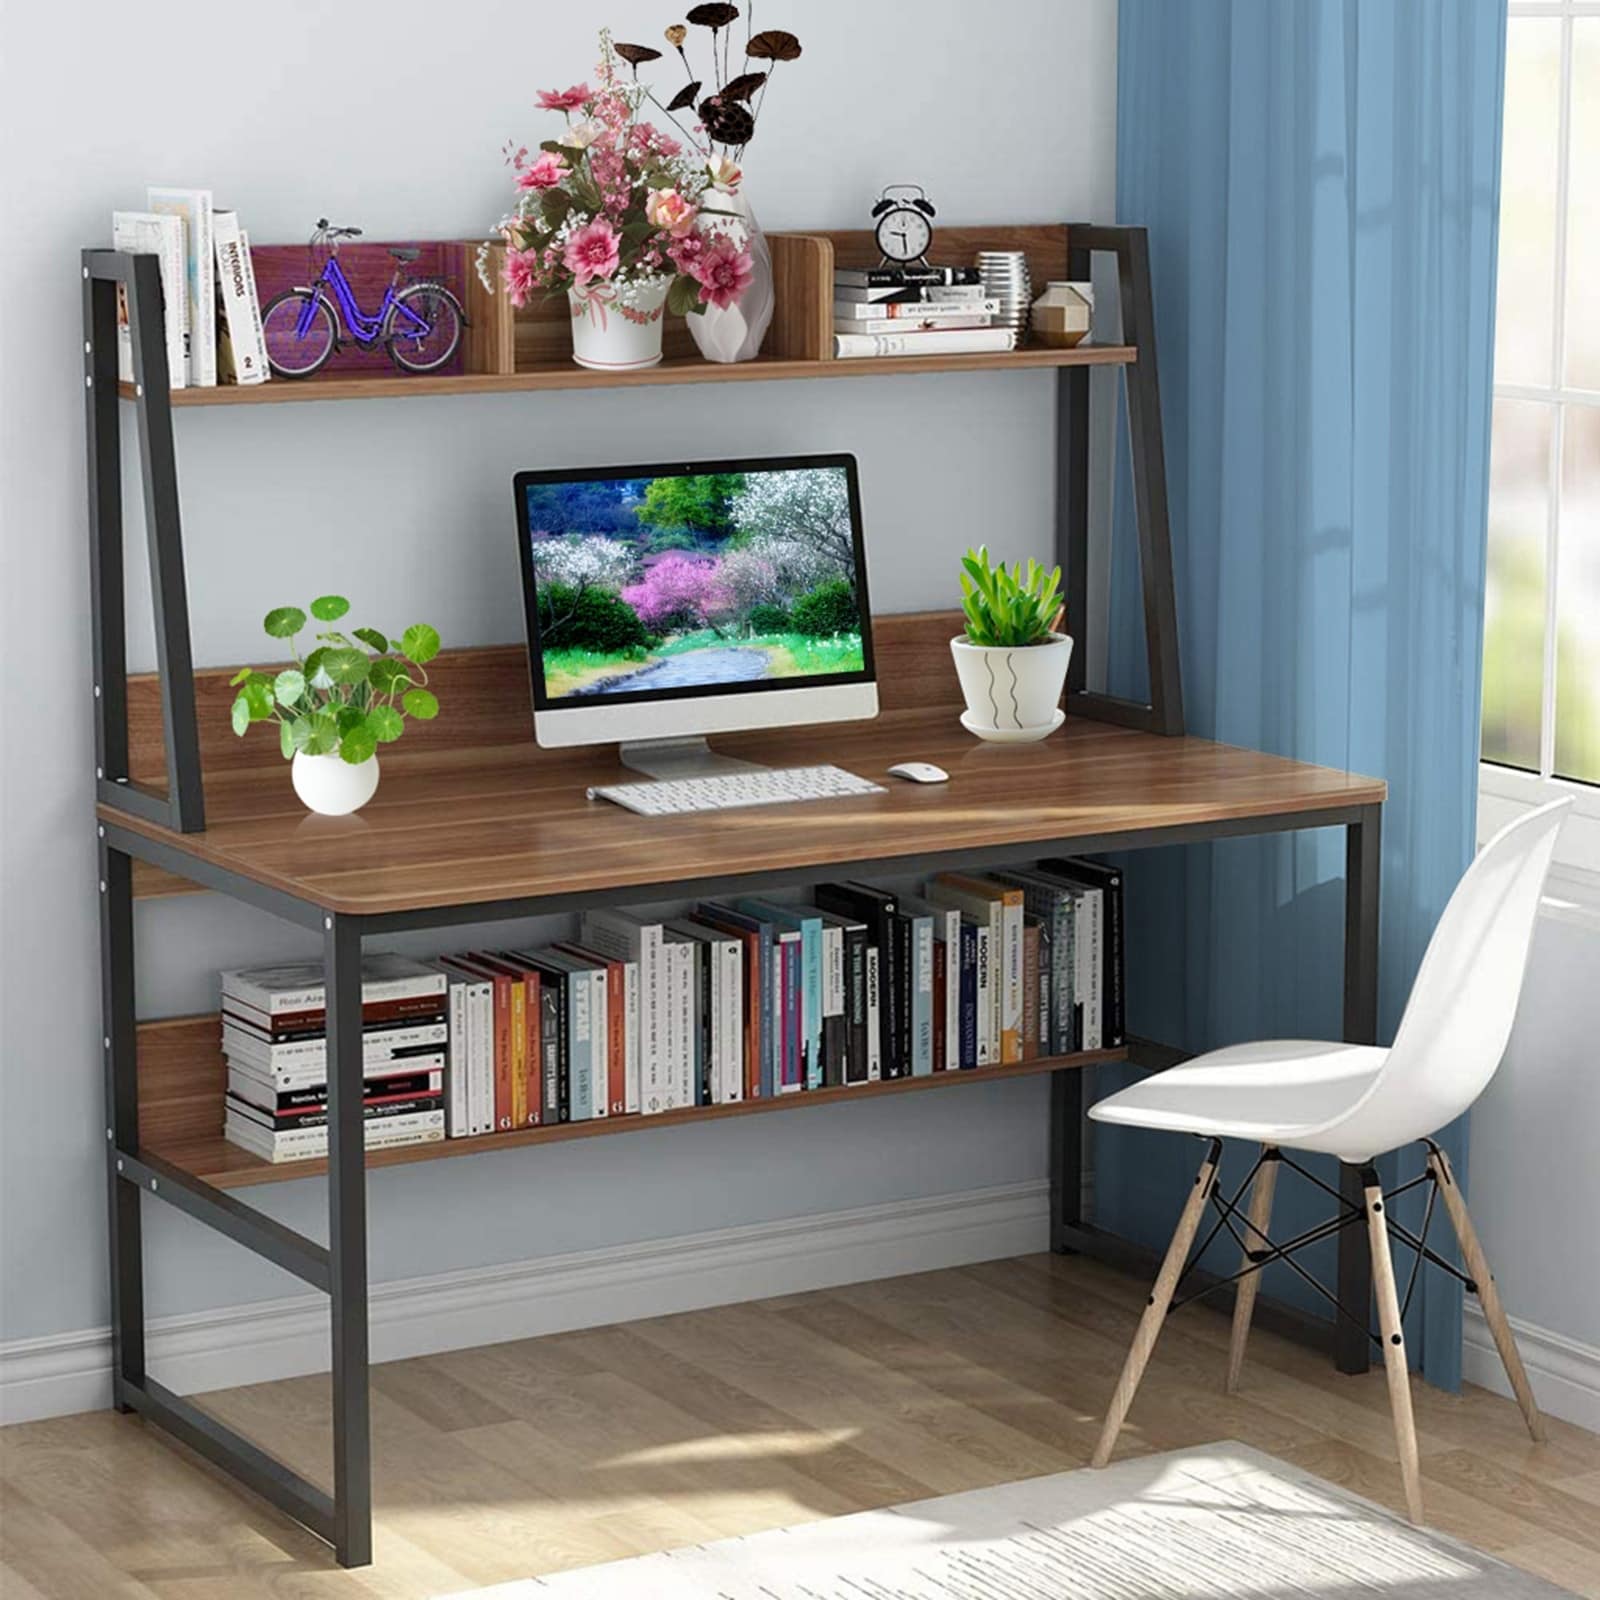 47.2 Home Office Desk, Computer Desk, Storage Desk Morden Style with Open  Shelves Worksation, Brown & Black - Bed Bath & Beyond - 36256637